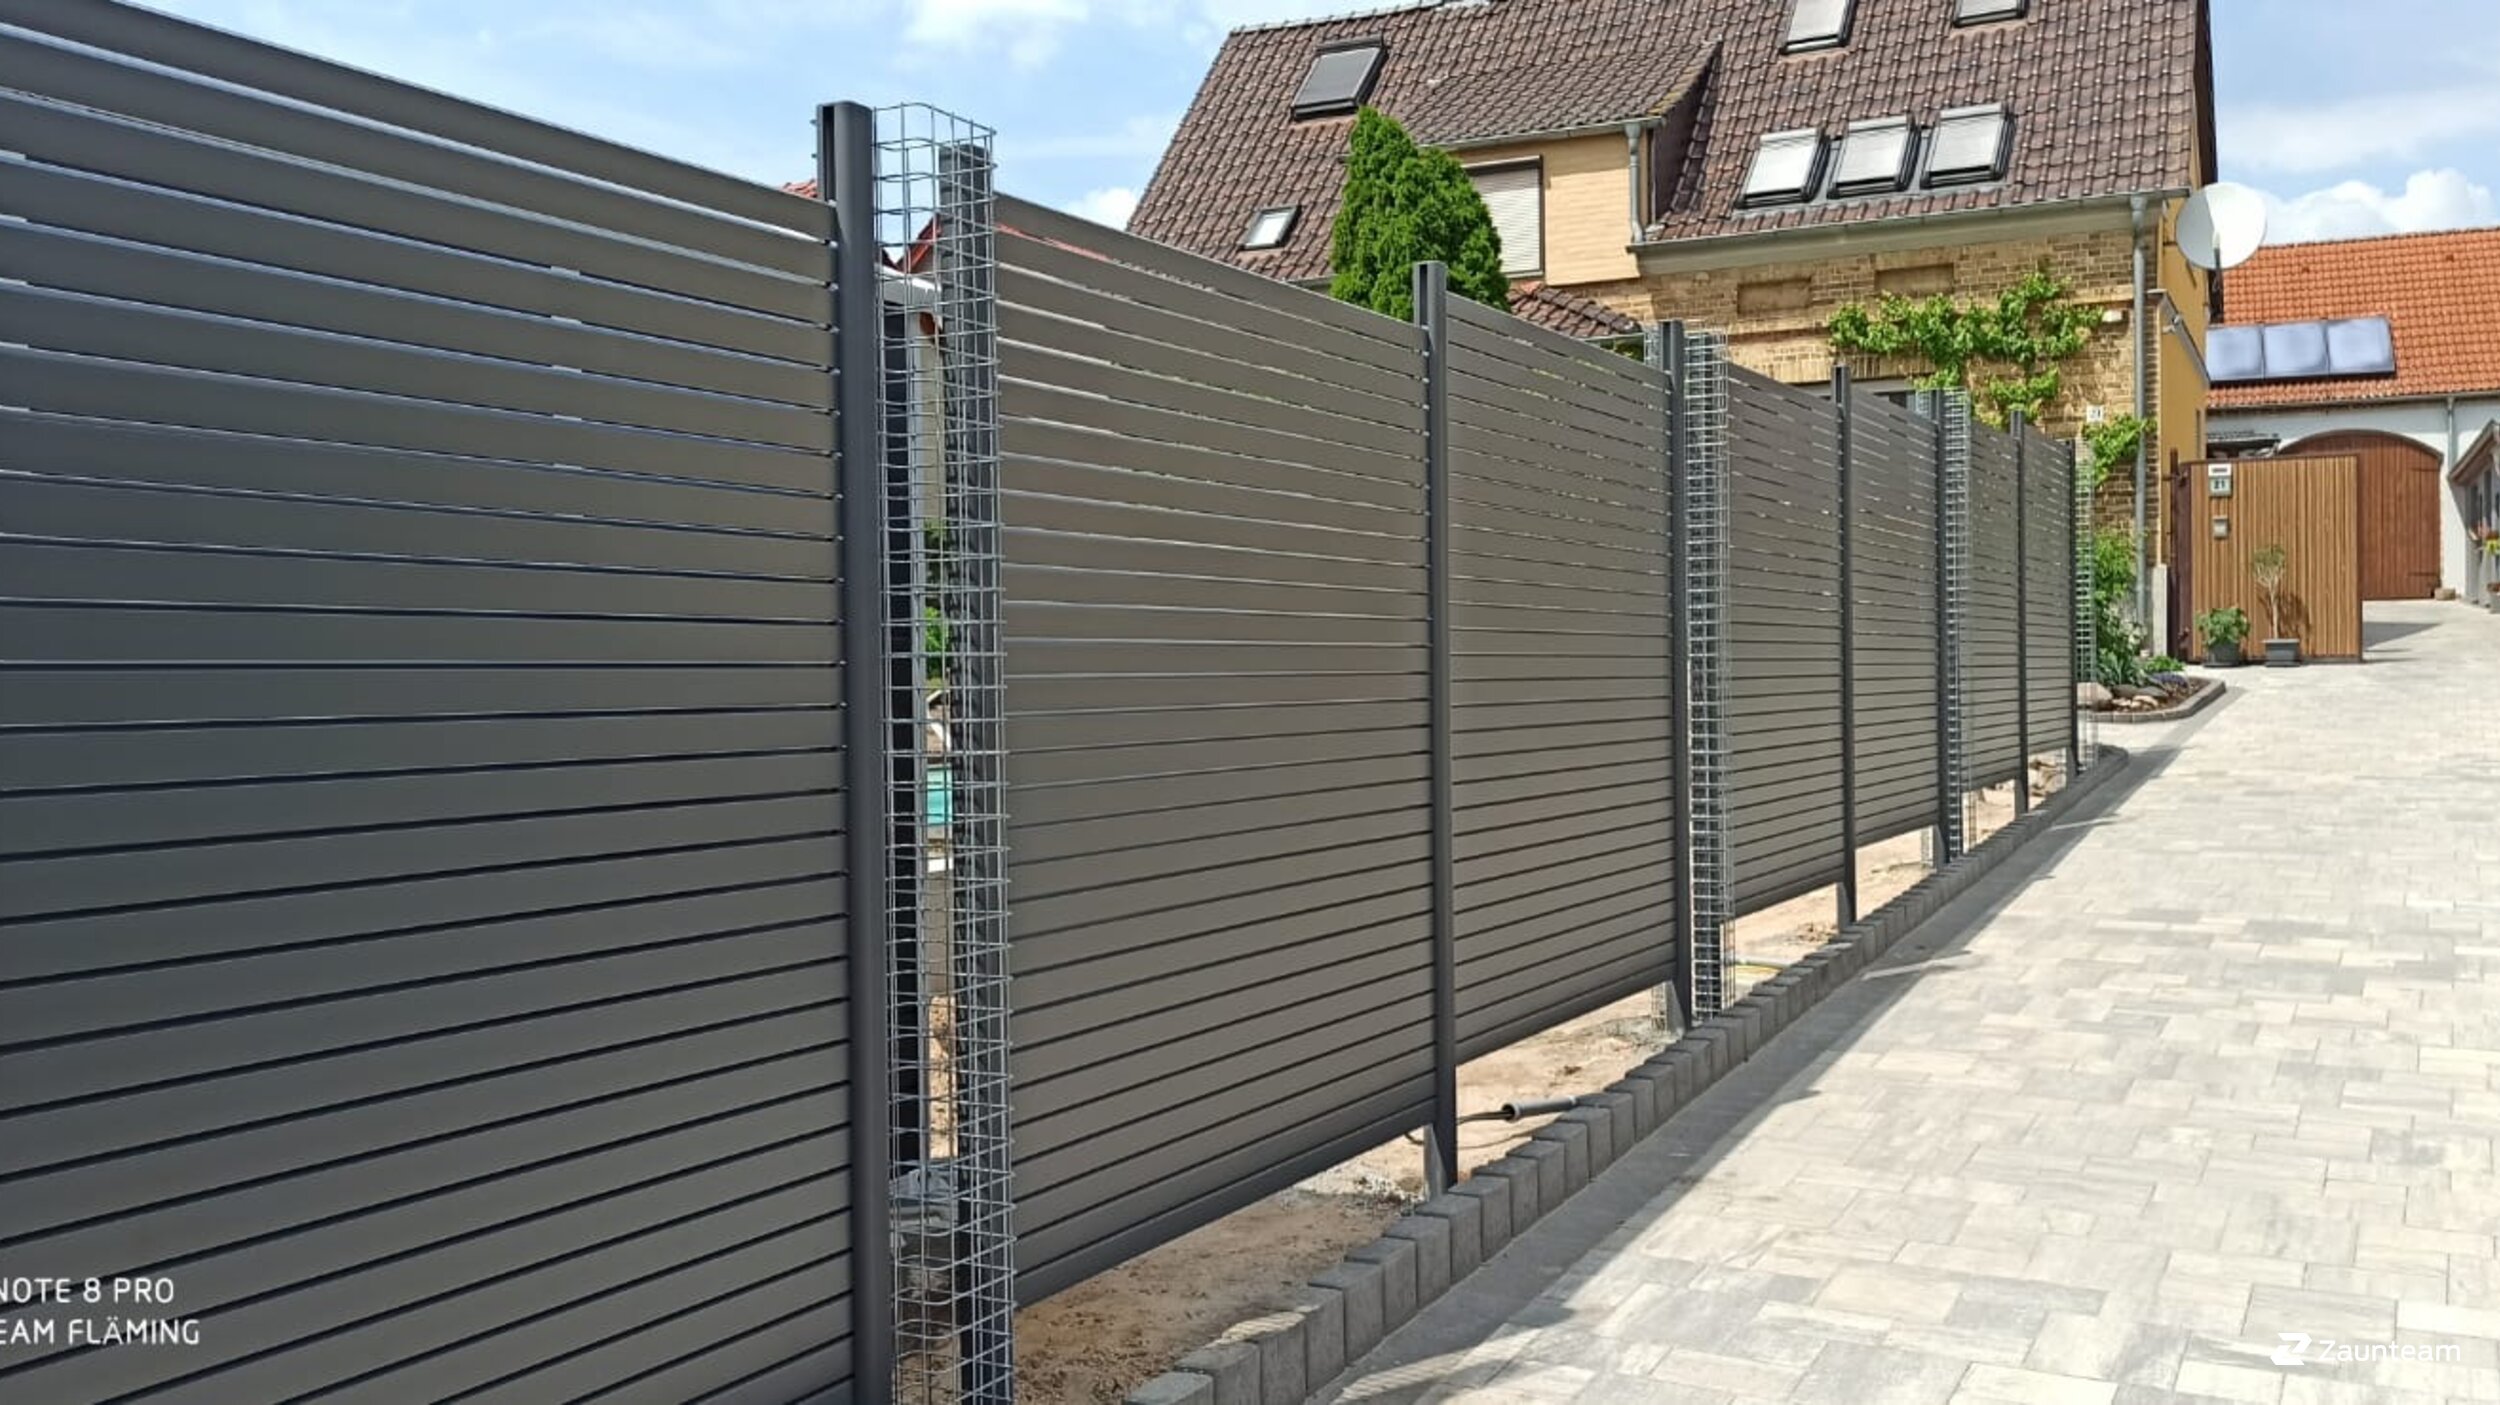 Protection brise-vue en aluminium de 2020 à 06889 Lutherstadt Wittenberg Allemagne de Zaunteam Fläming.